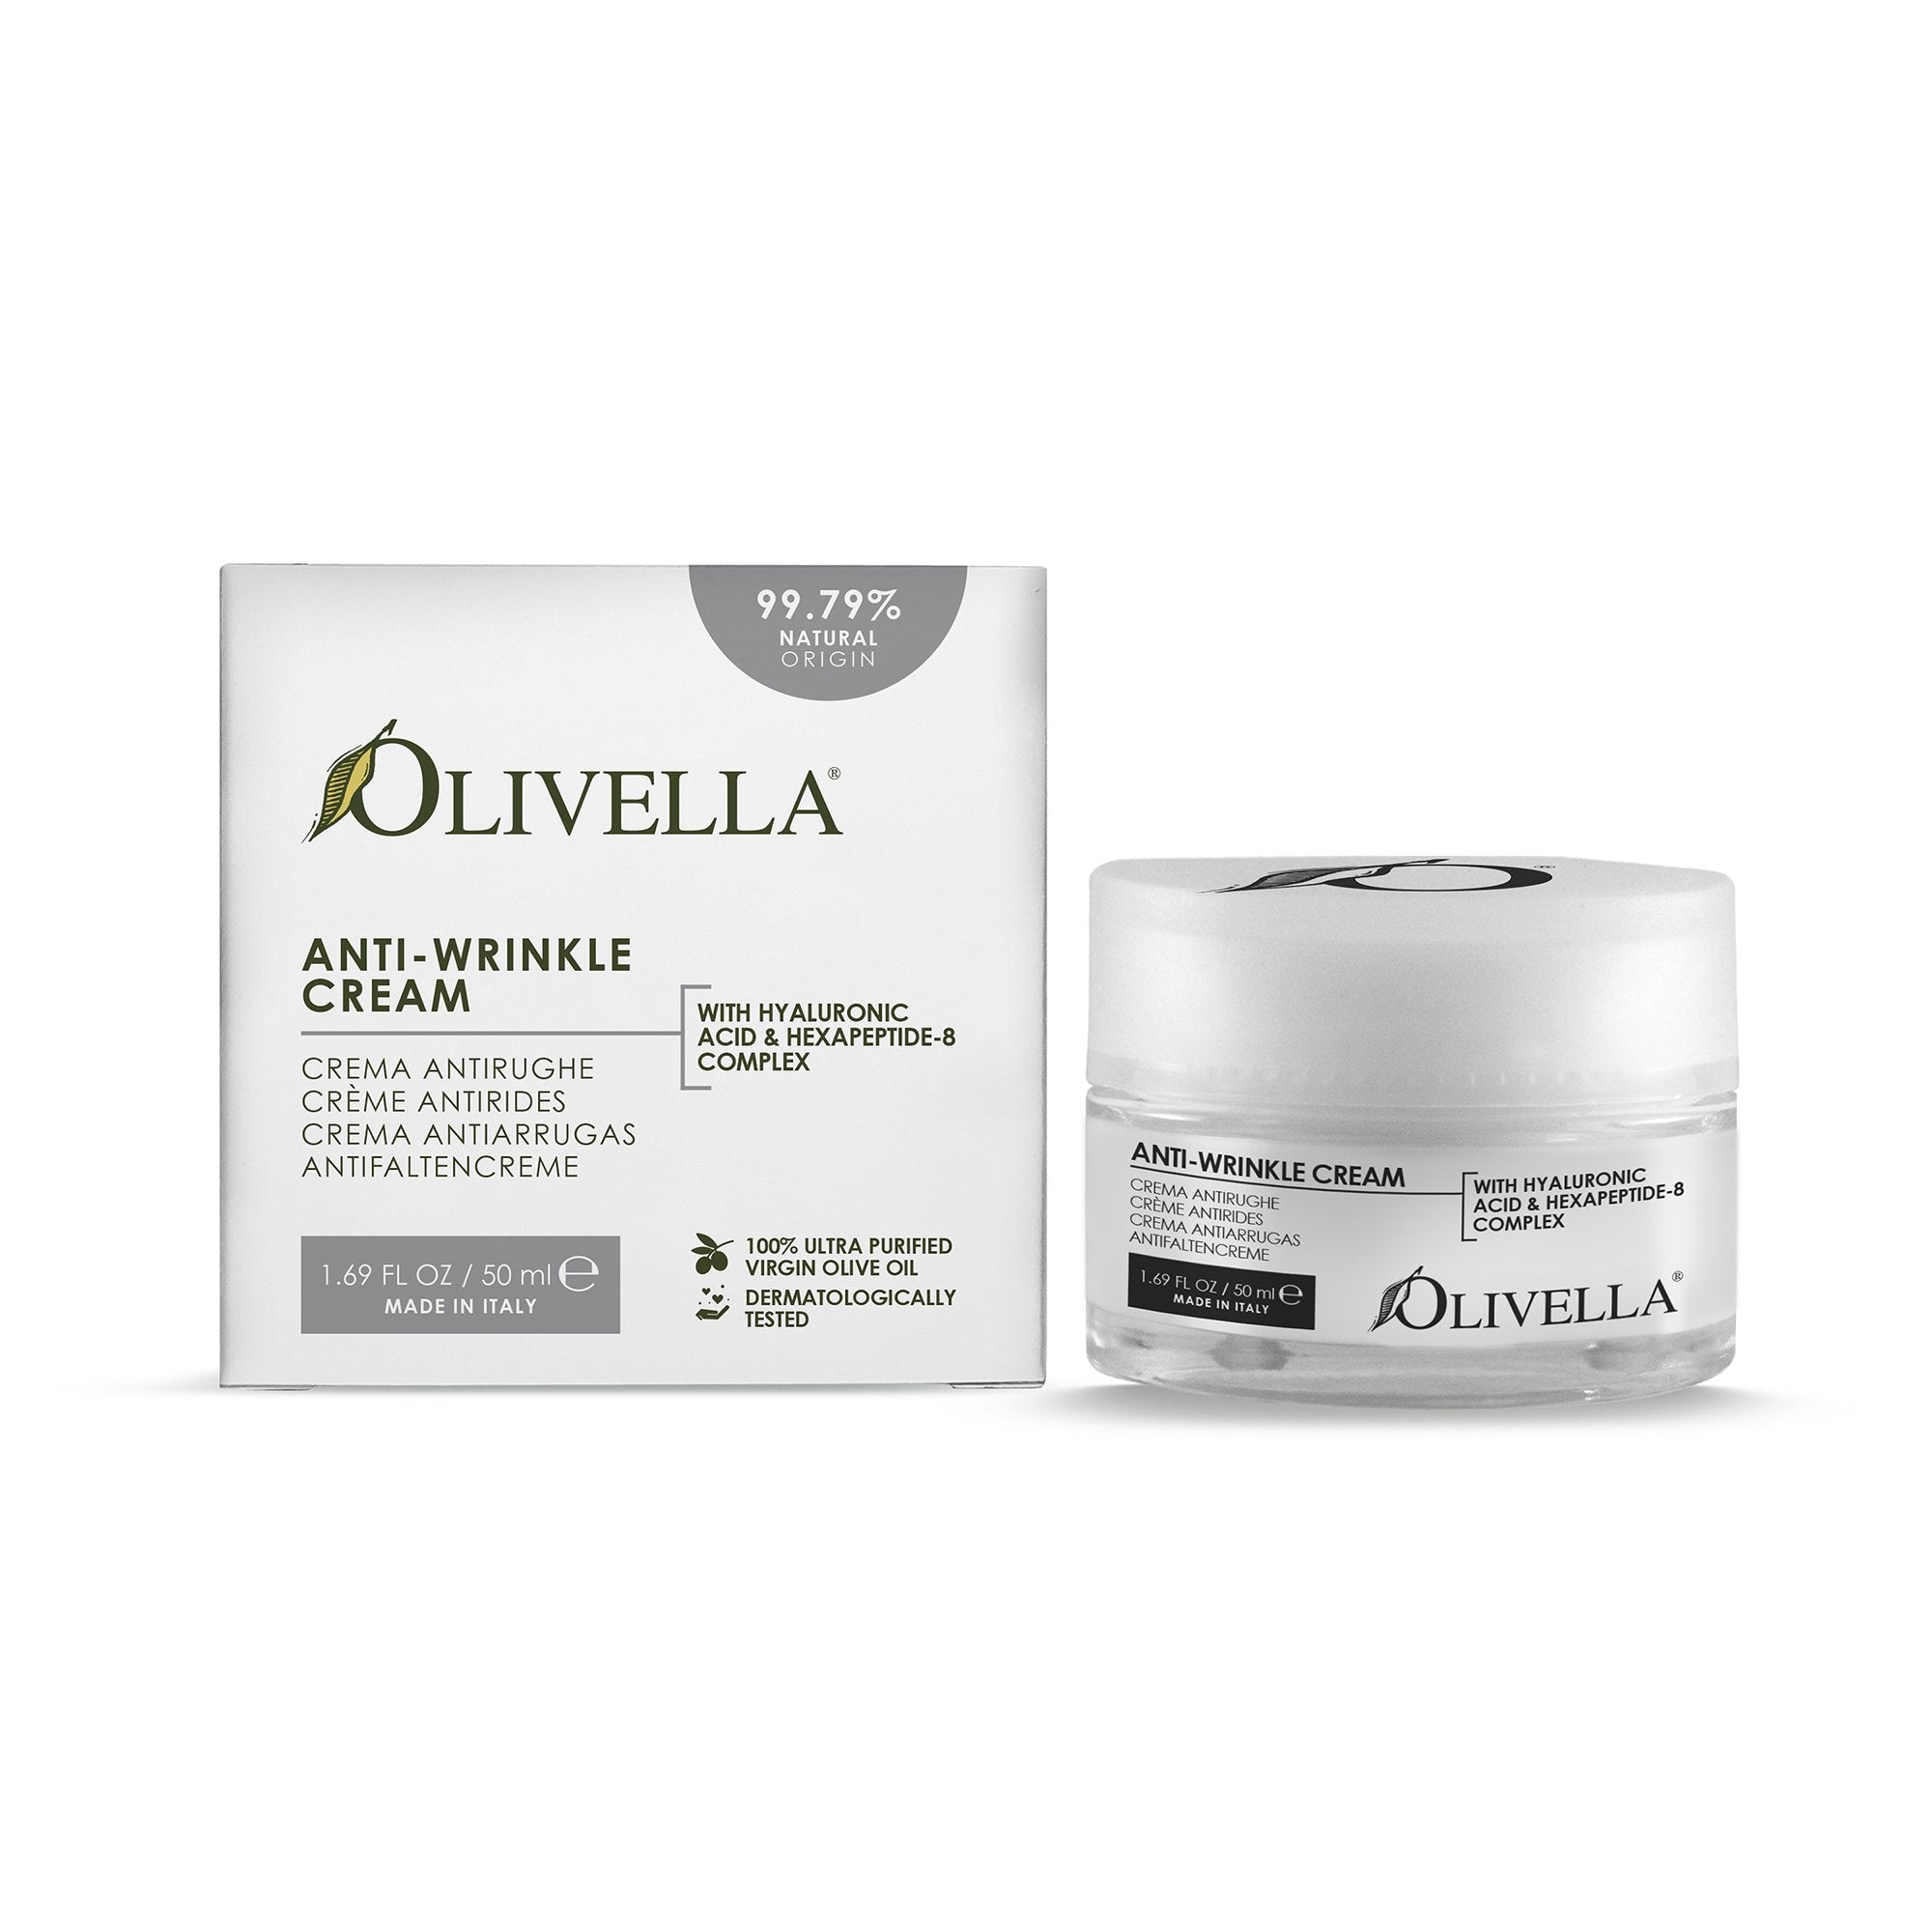 Olivella Anti-Wrinkle Cream 1.69 Oz - Olivella